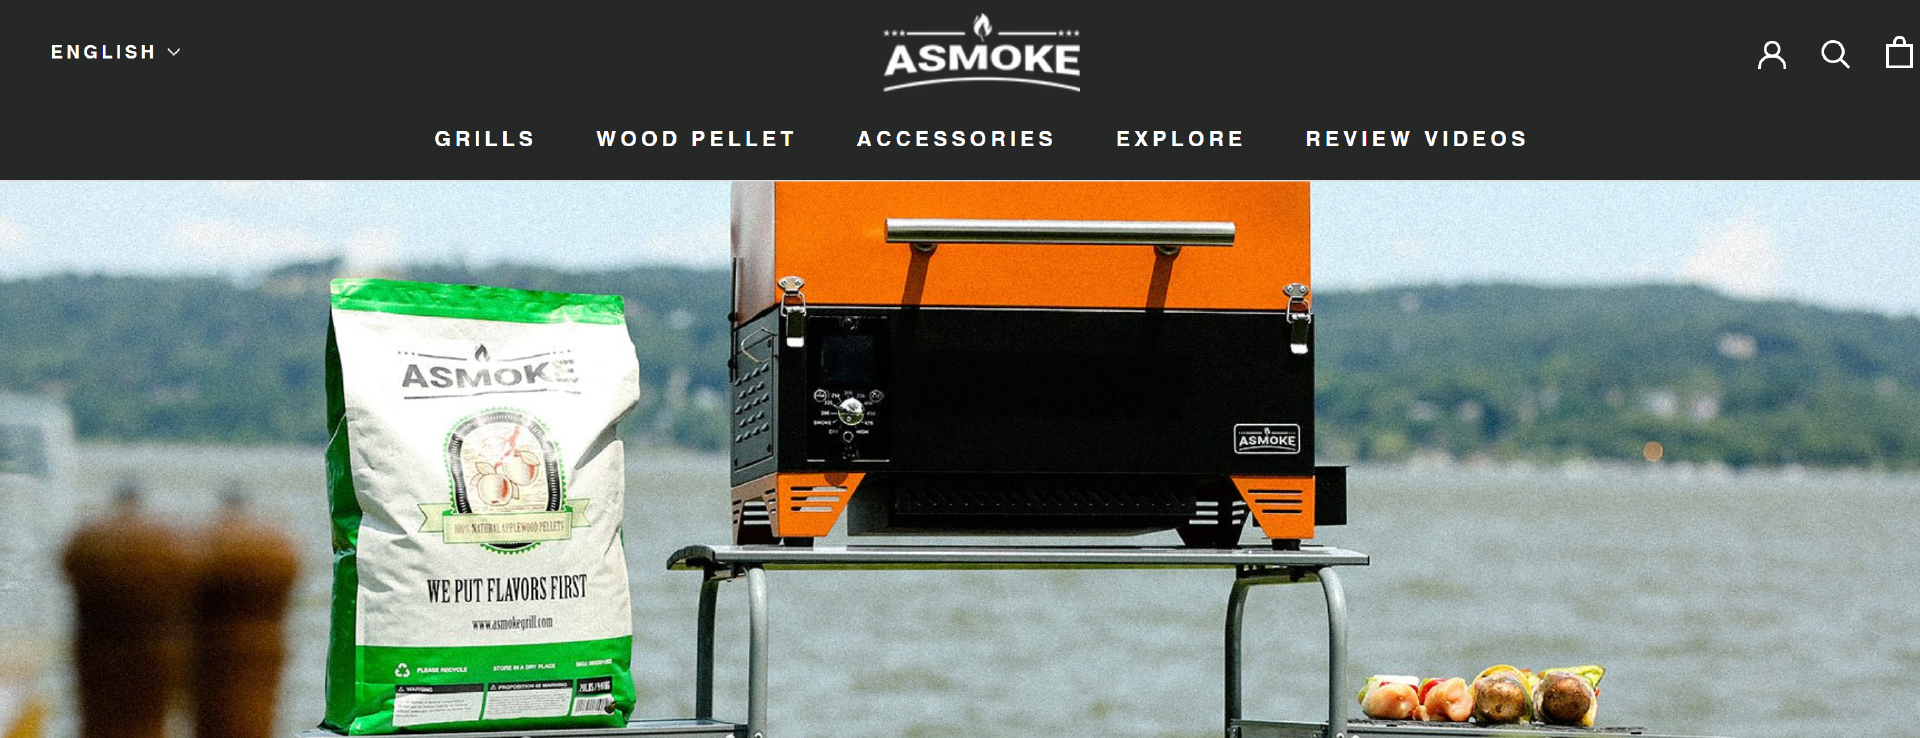 木颗粒电烤炉品牌「ASMOKE」完成新一轮融资